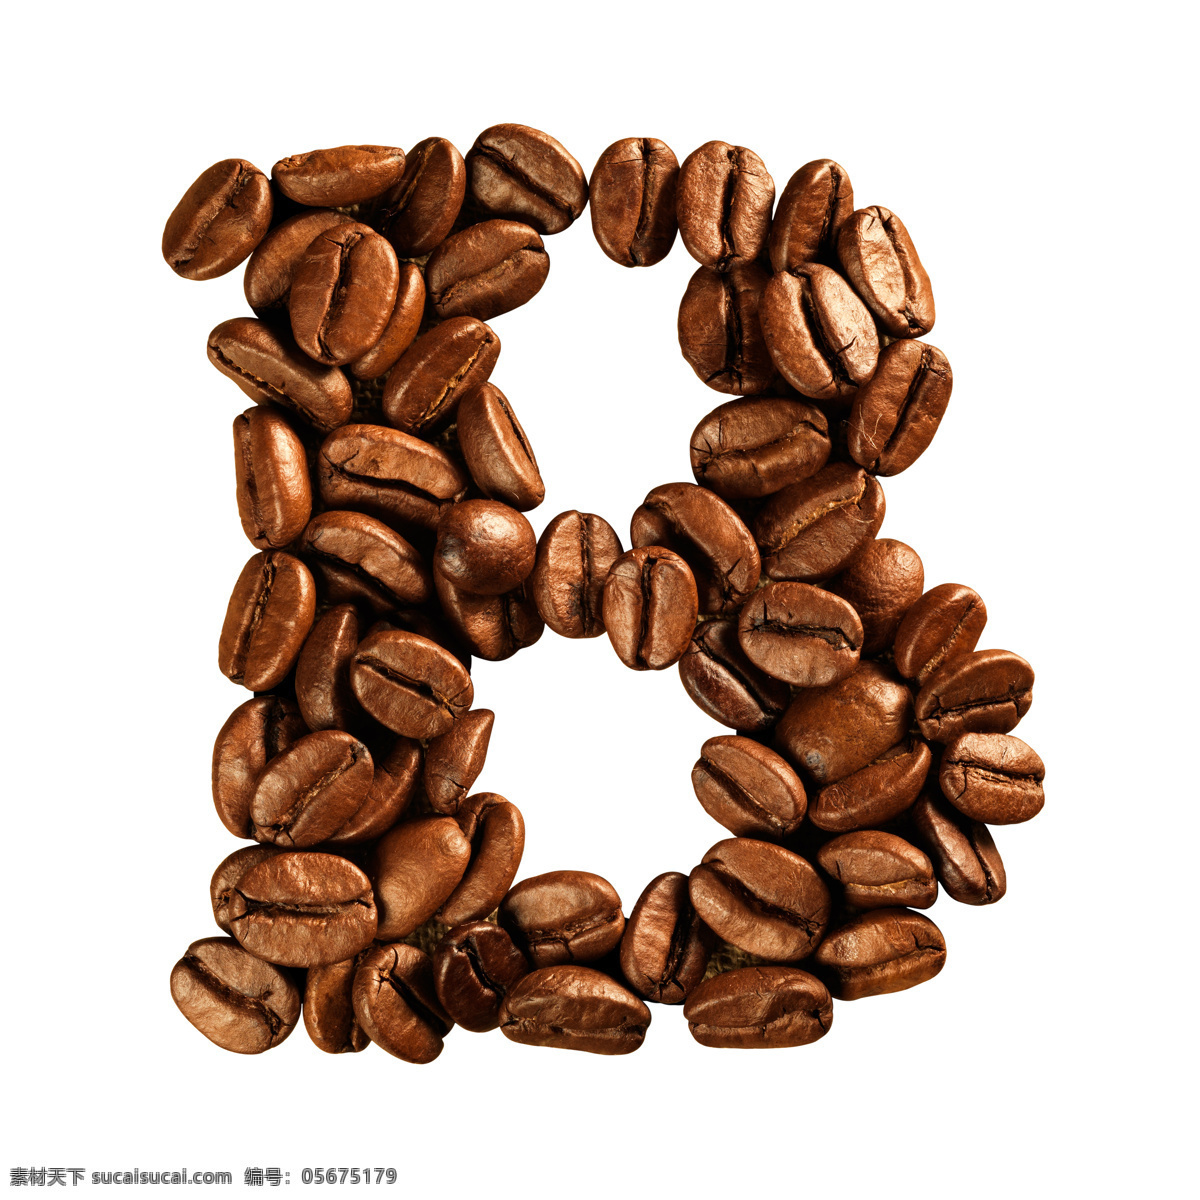 咖啡豆 组成 字母 b 咖啡 文字 艺术字体 书画文字 文化艺术 白色